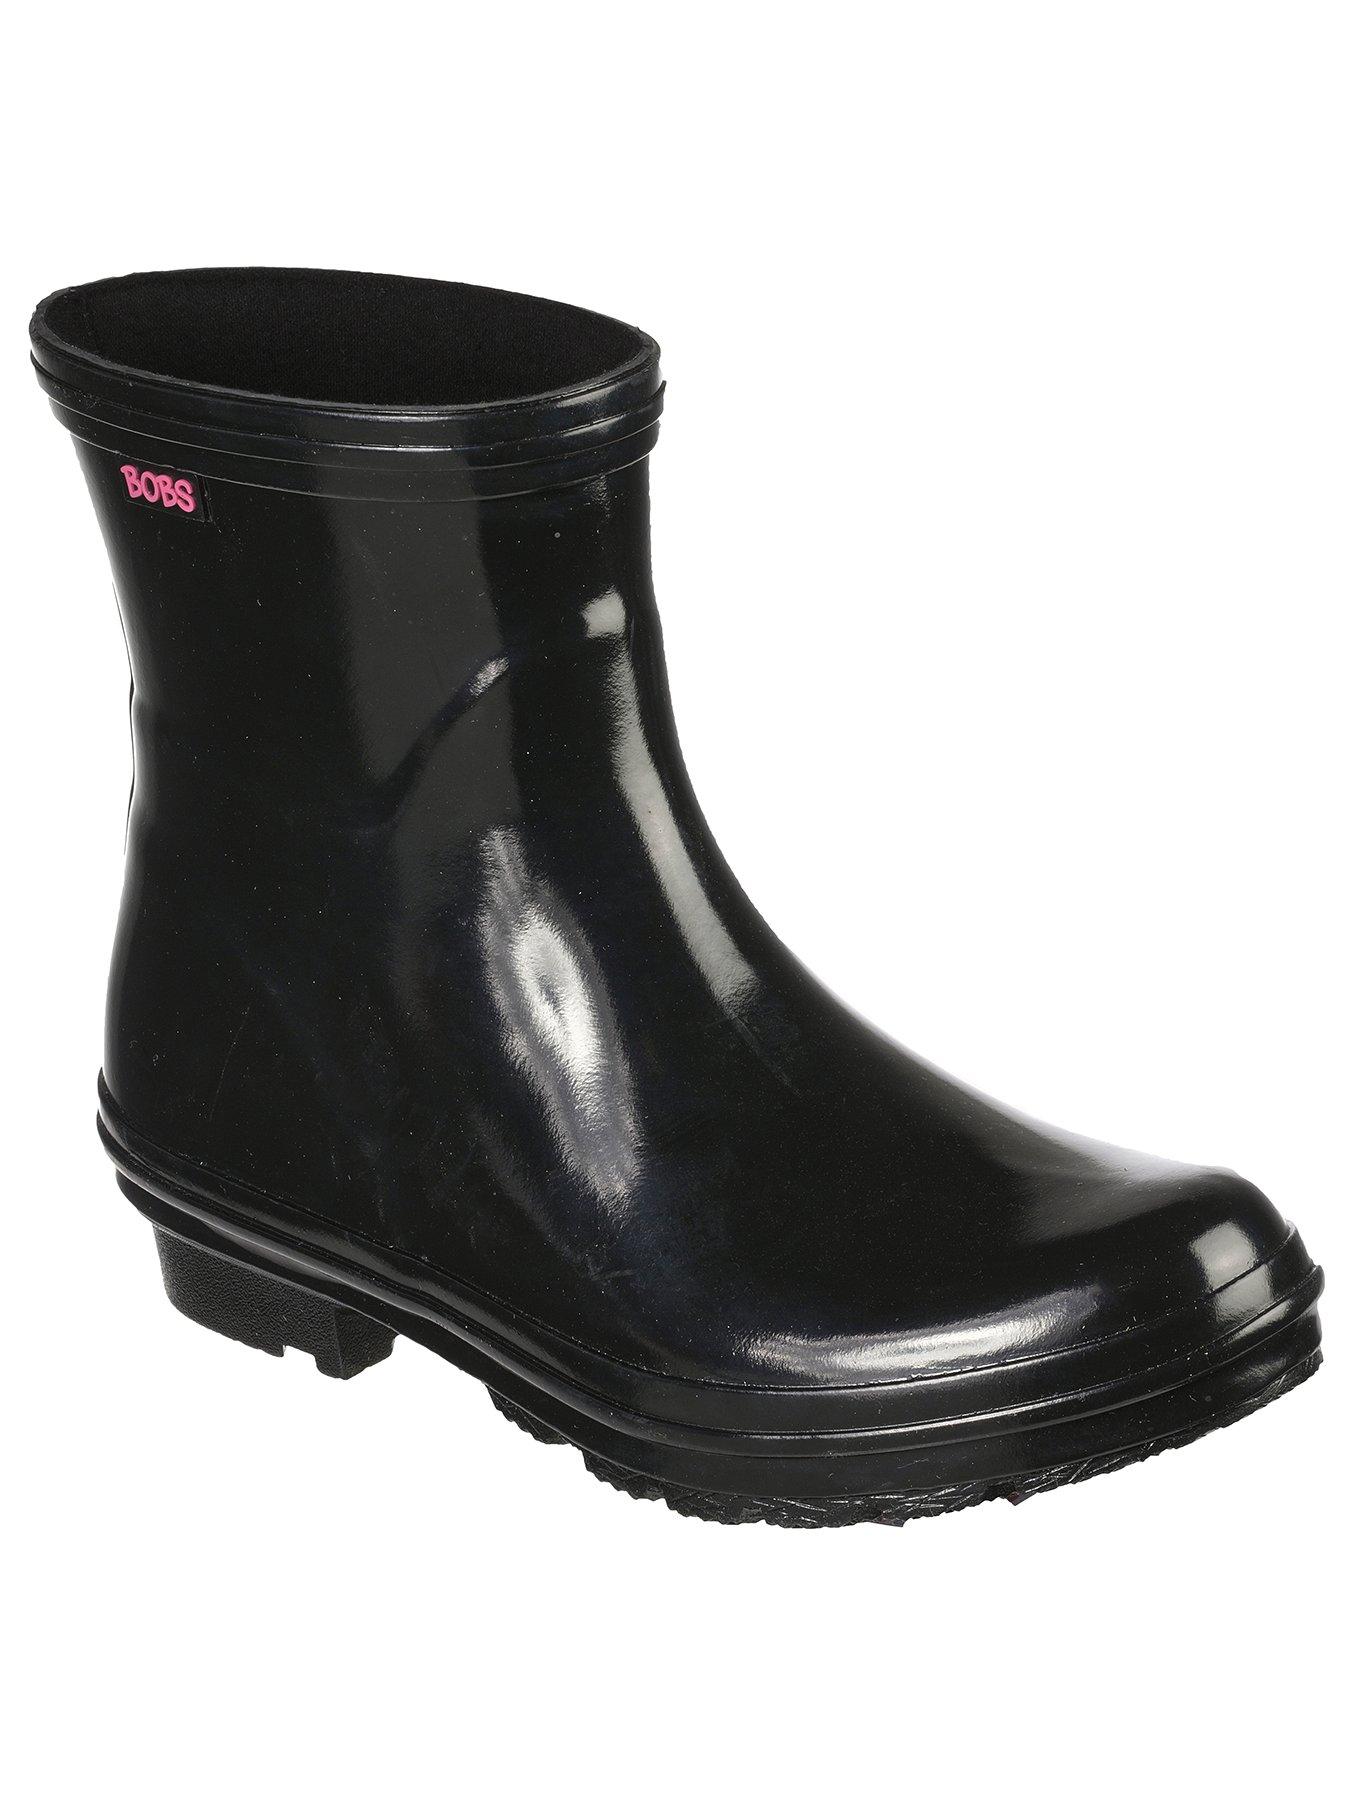 Shoes & boots Rain Check Neon Puddles Wellington Boots